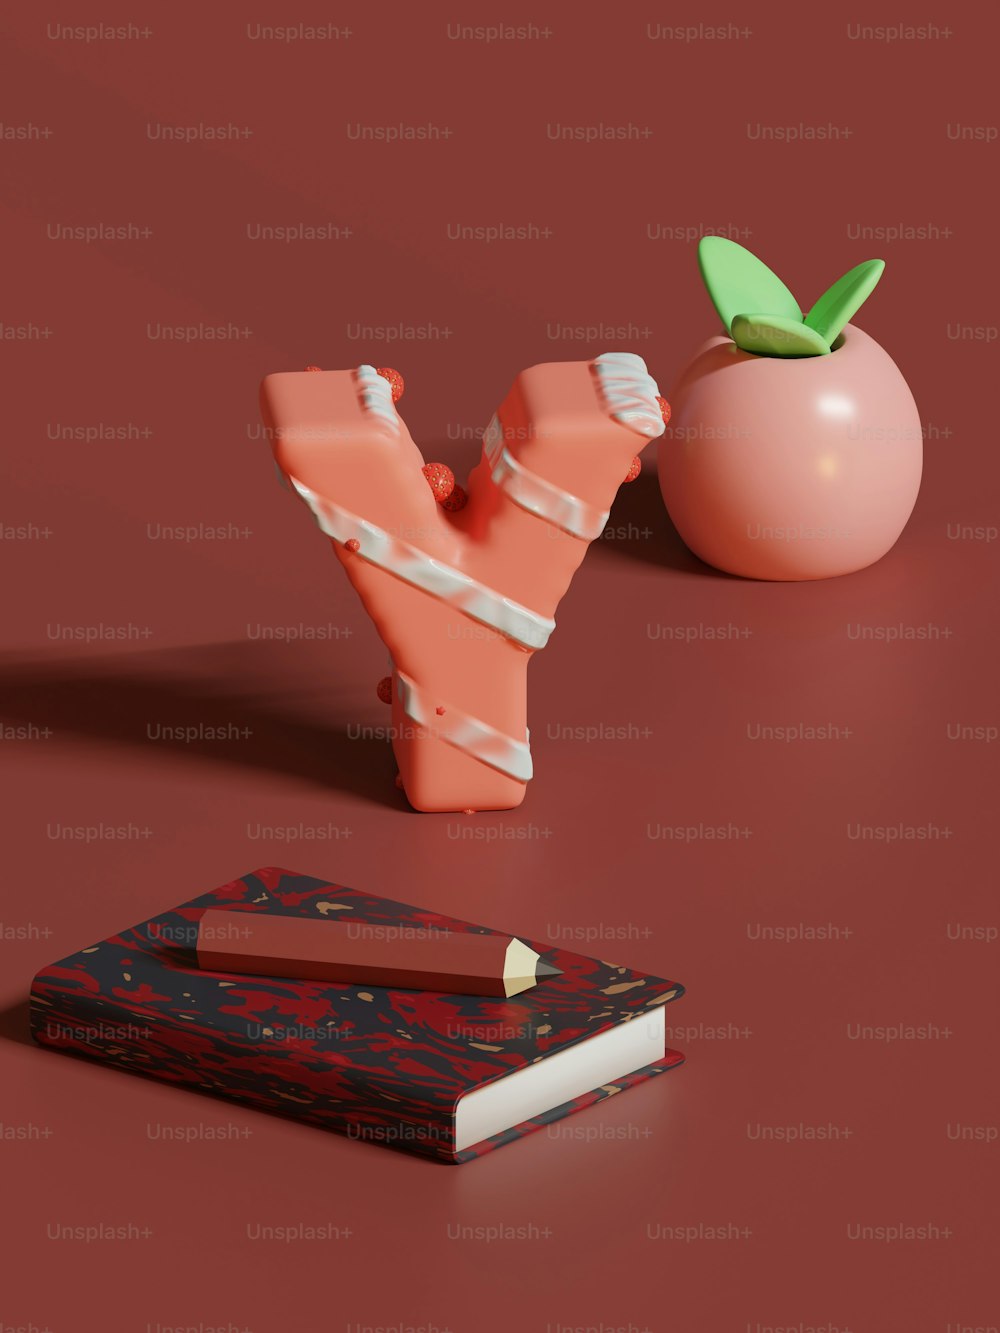 Un pezzo di carta accanto a una mela e un libro